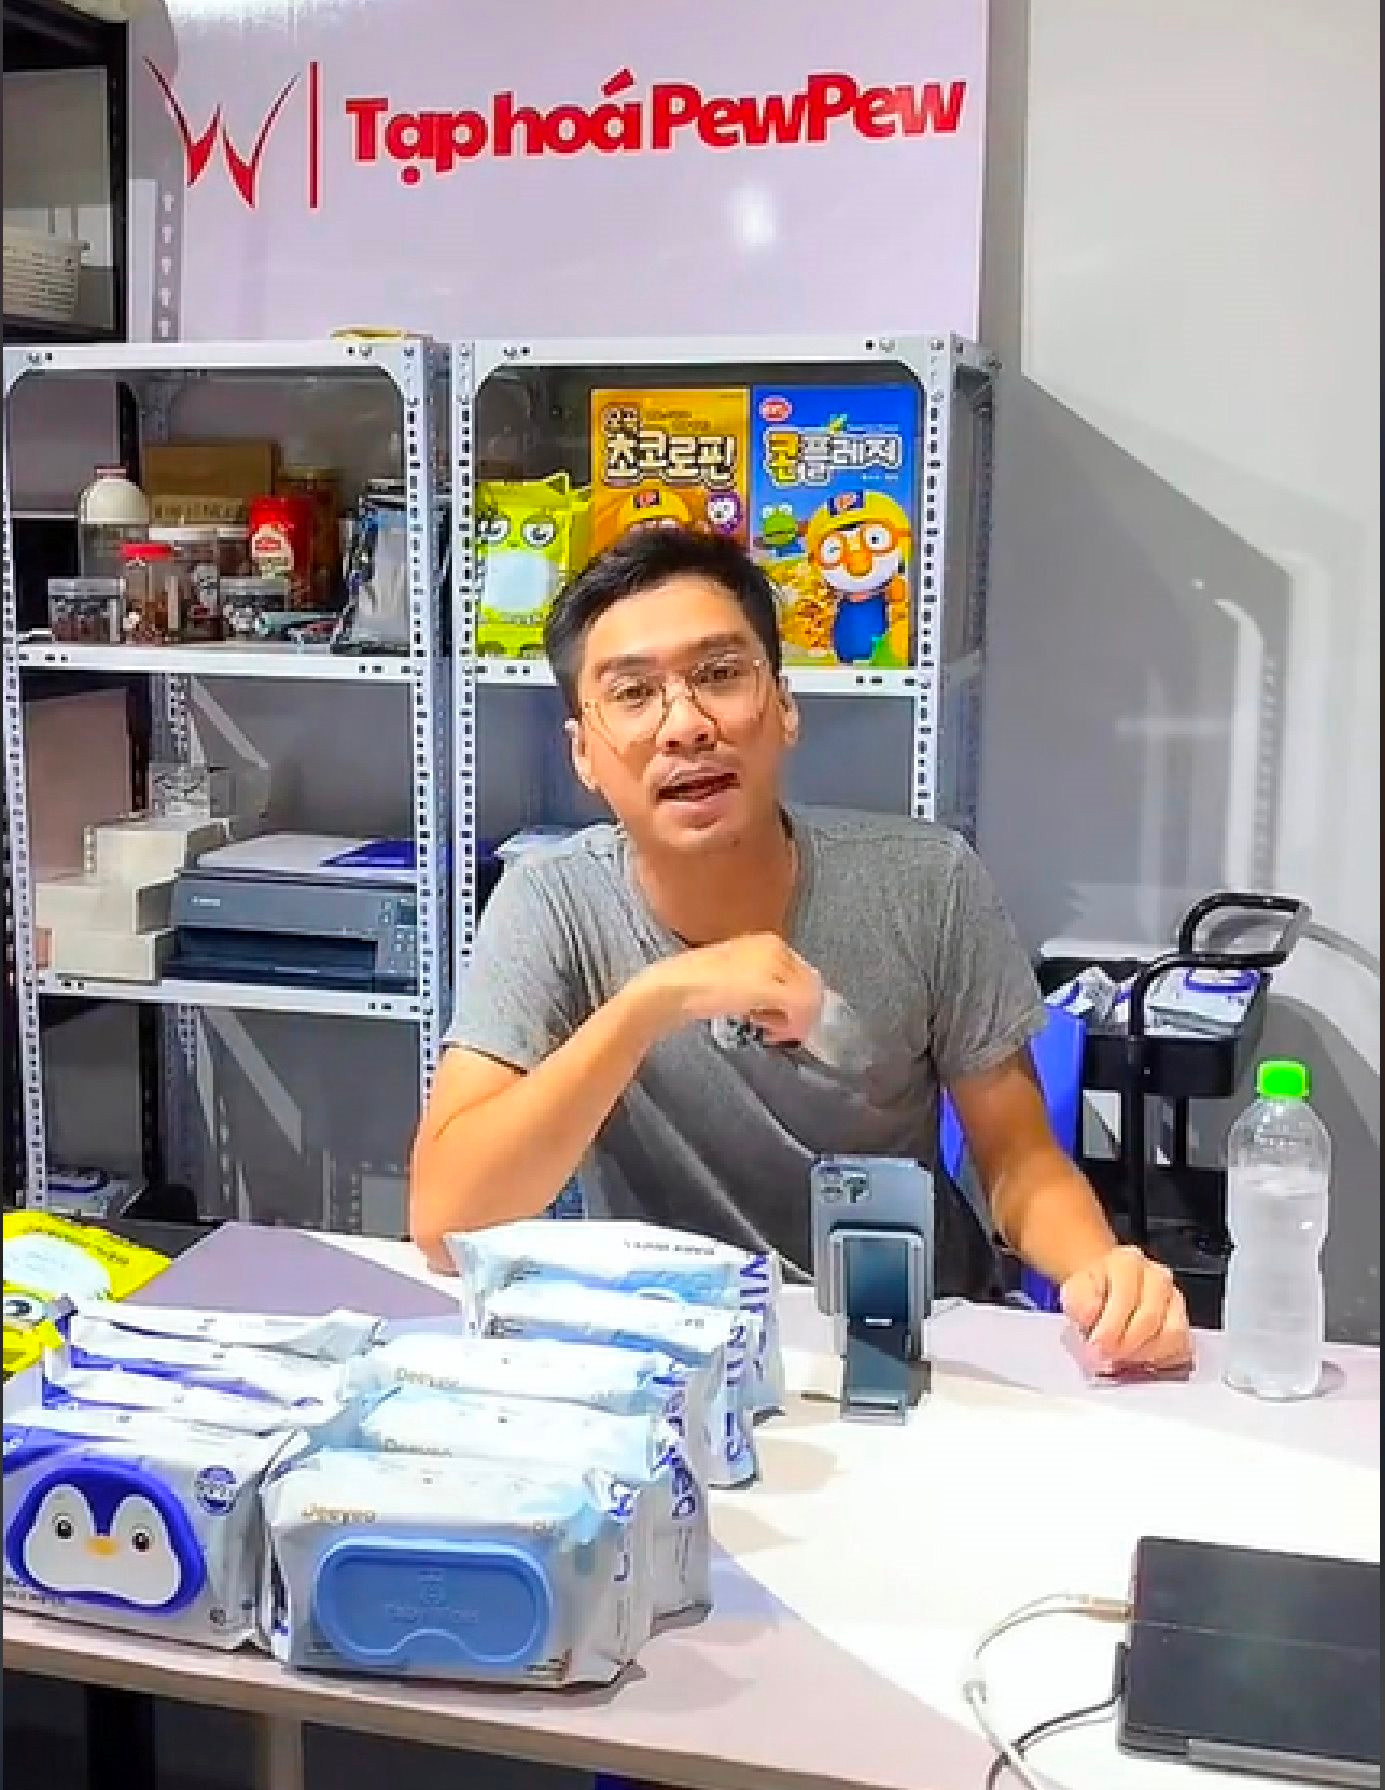 PewPew tiết lộ lý do khởi nghiệp siêu dị trên TikTok với giấy vệ sinh, livestream bằng kỷ vật tình yêu, và chuyện ‘chưa có nhãn hàng nào phải buồn’ - Ảnh 7.